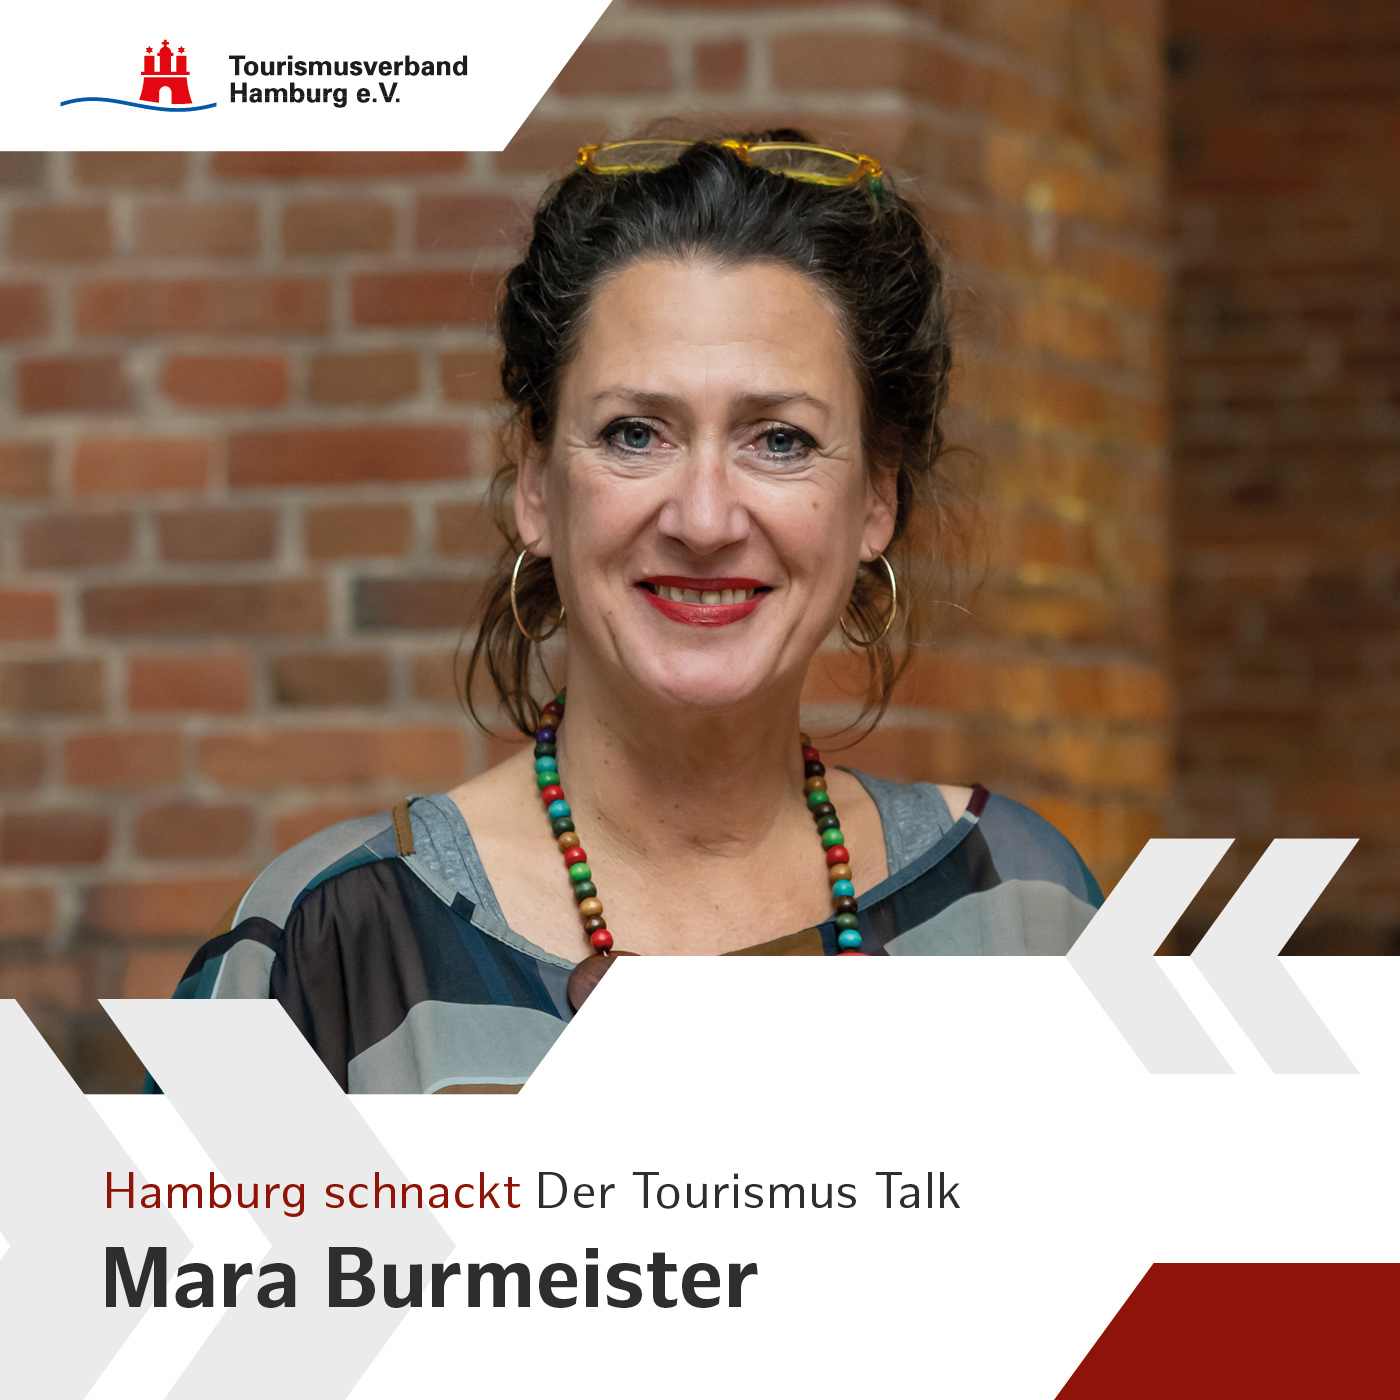 Hamburg schnackt mit Mara Burmeister